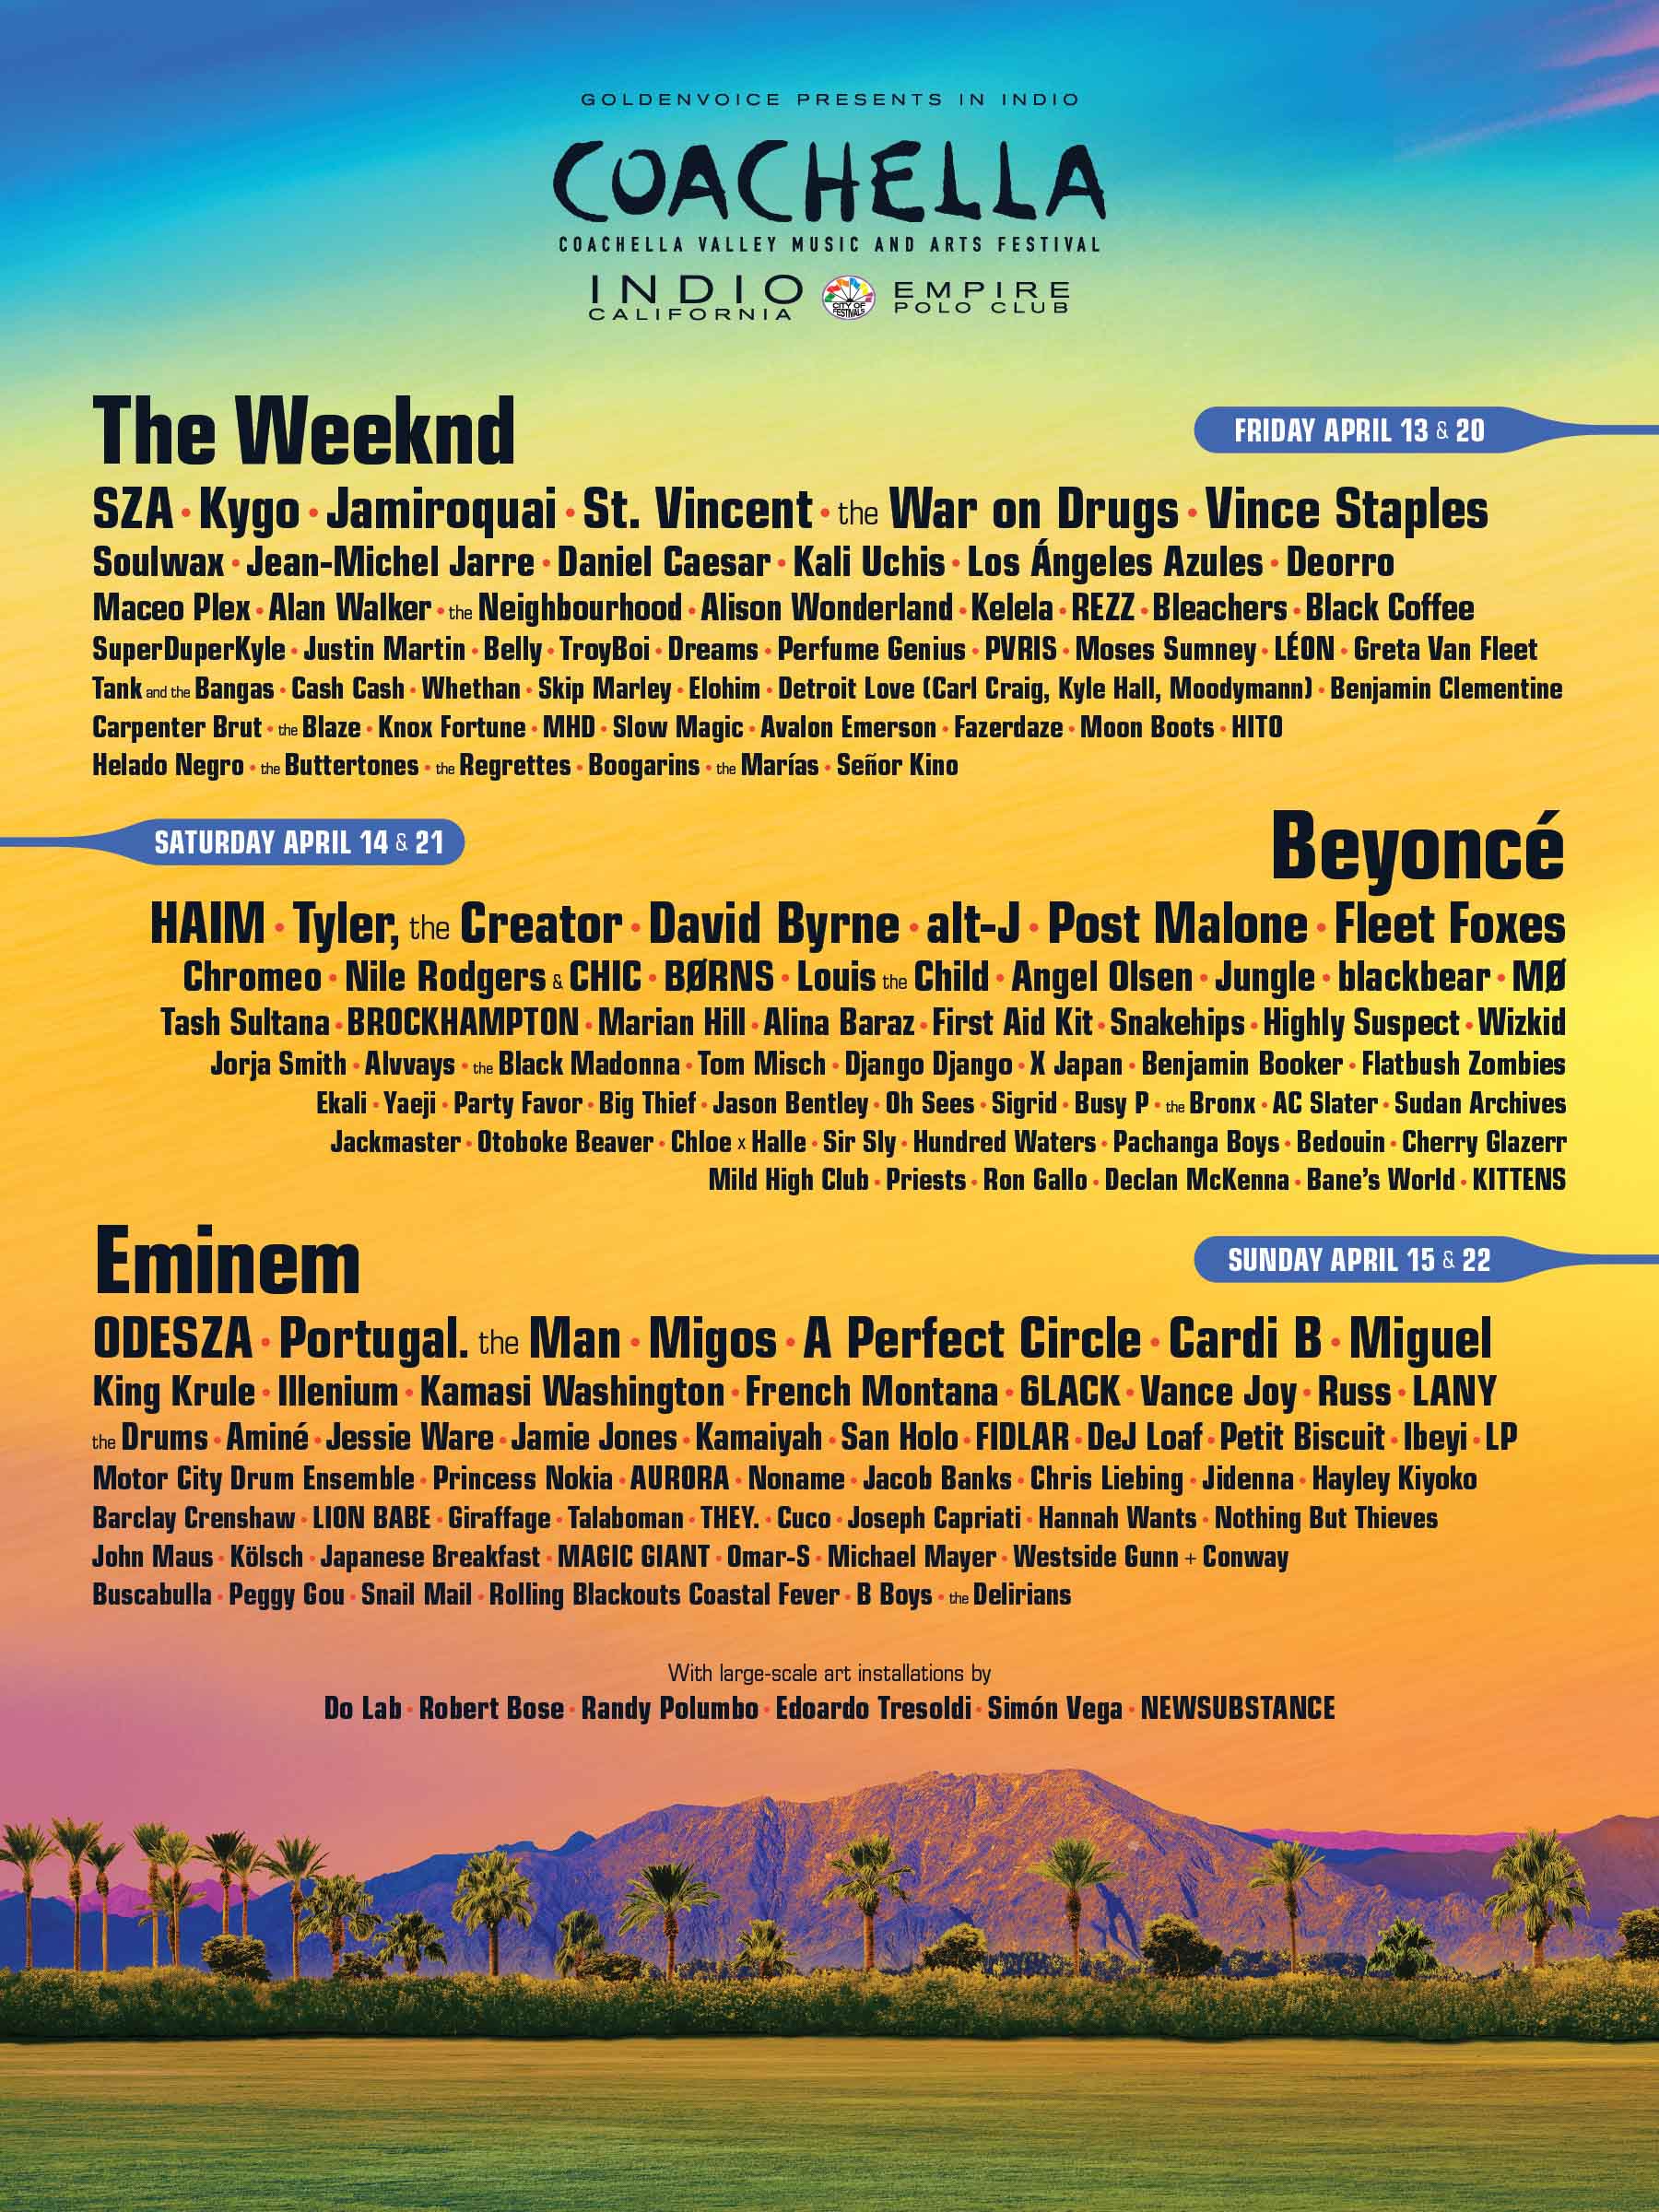 Coachella、2018年のラインナップが発表。ヘッドライナーはBeyoncé、Eminem、The Weeknd